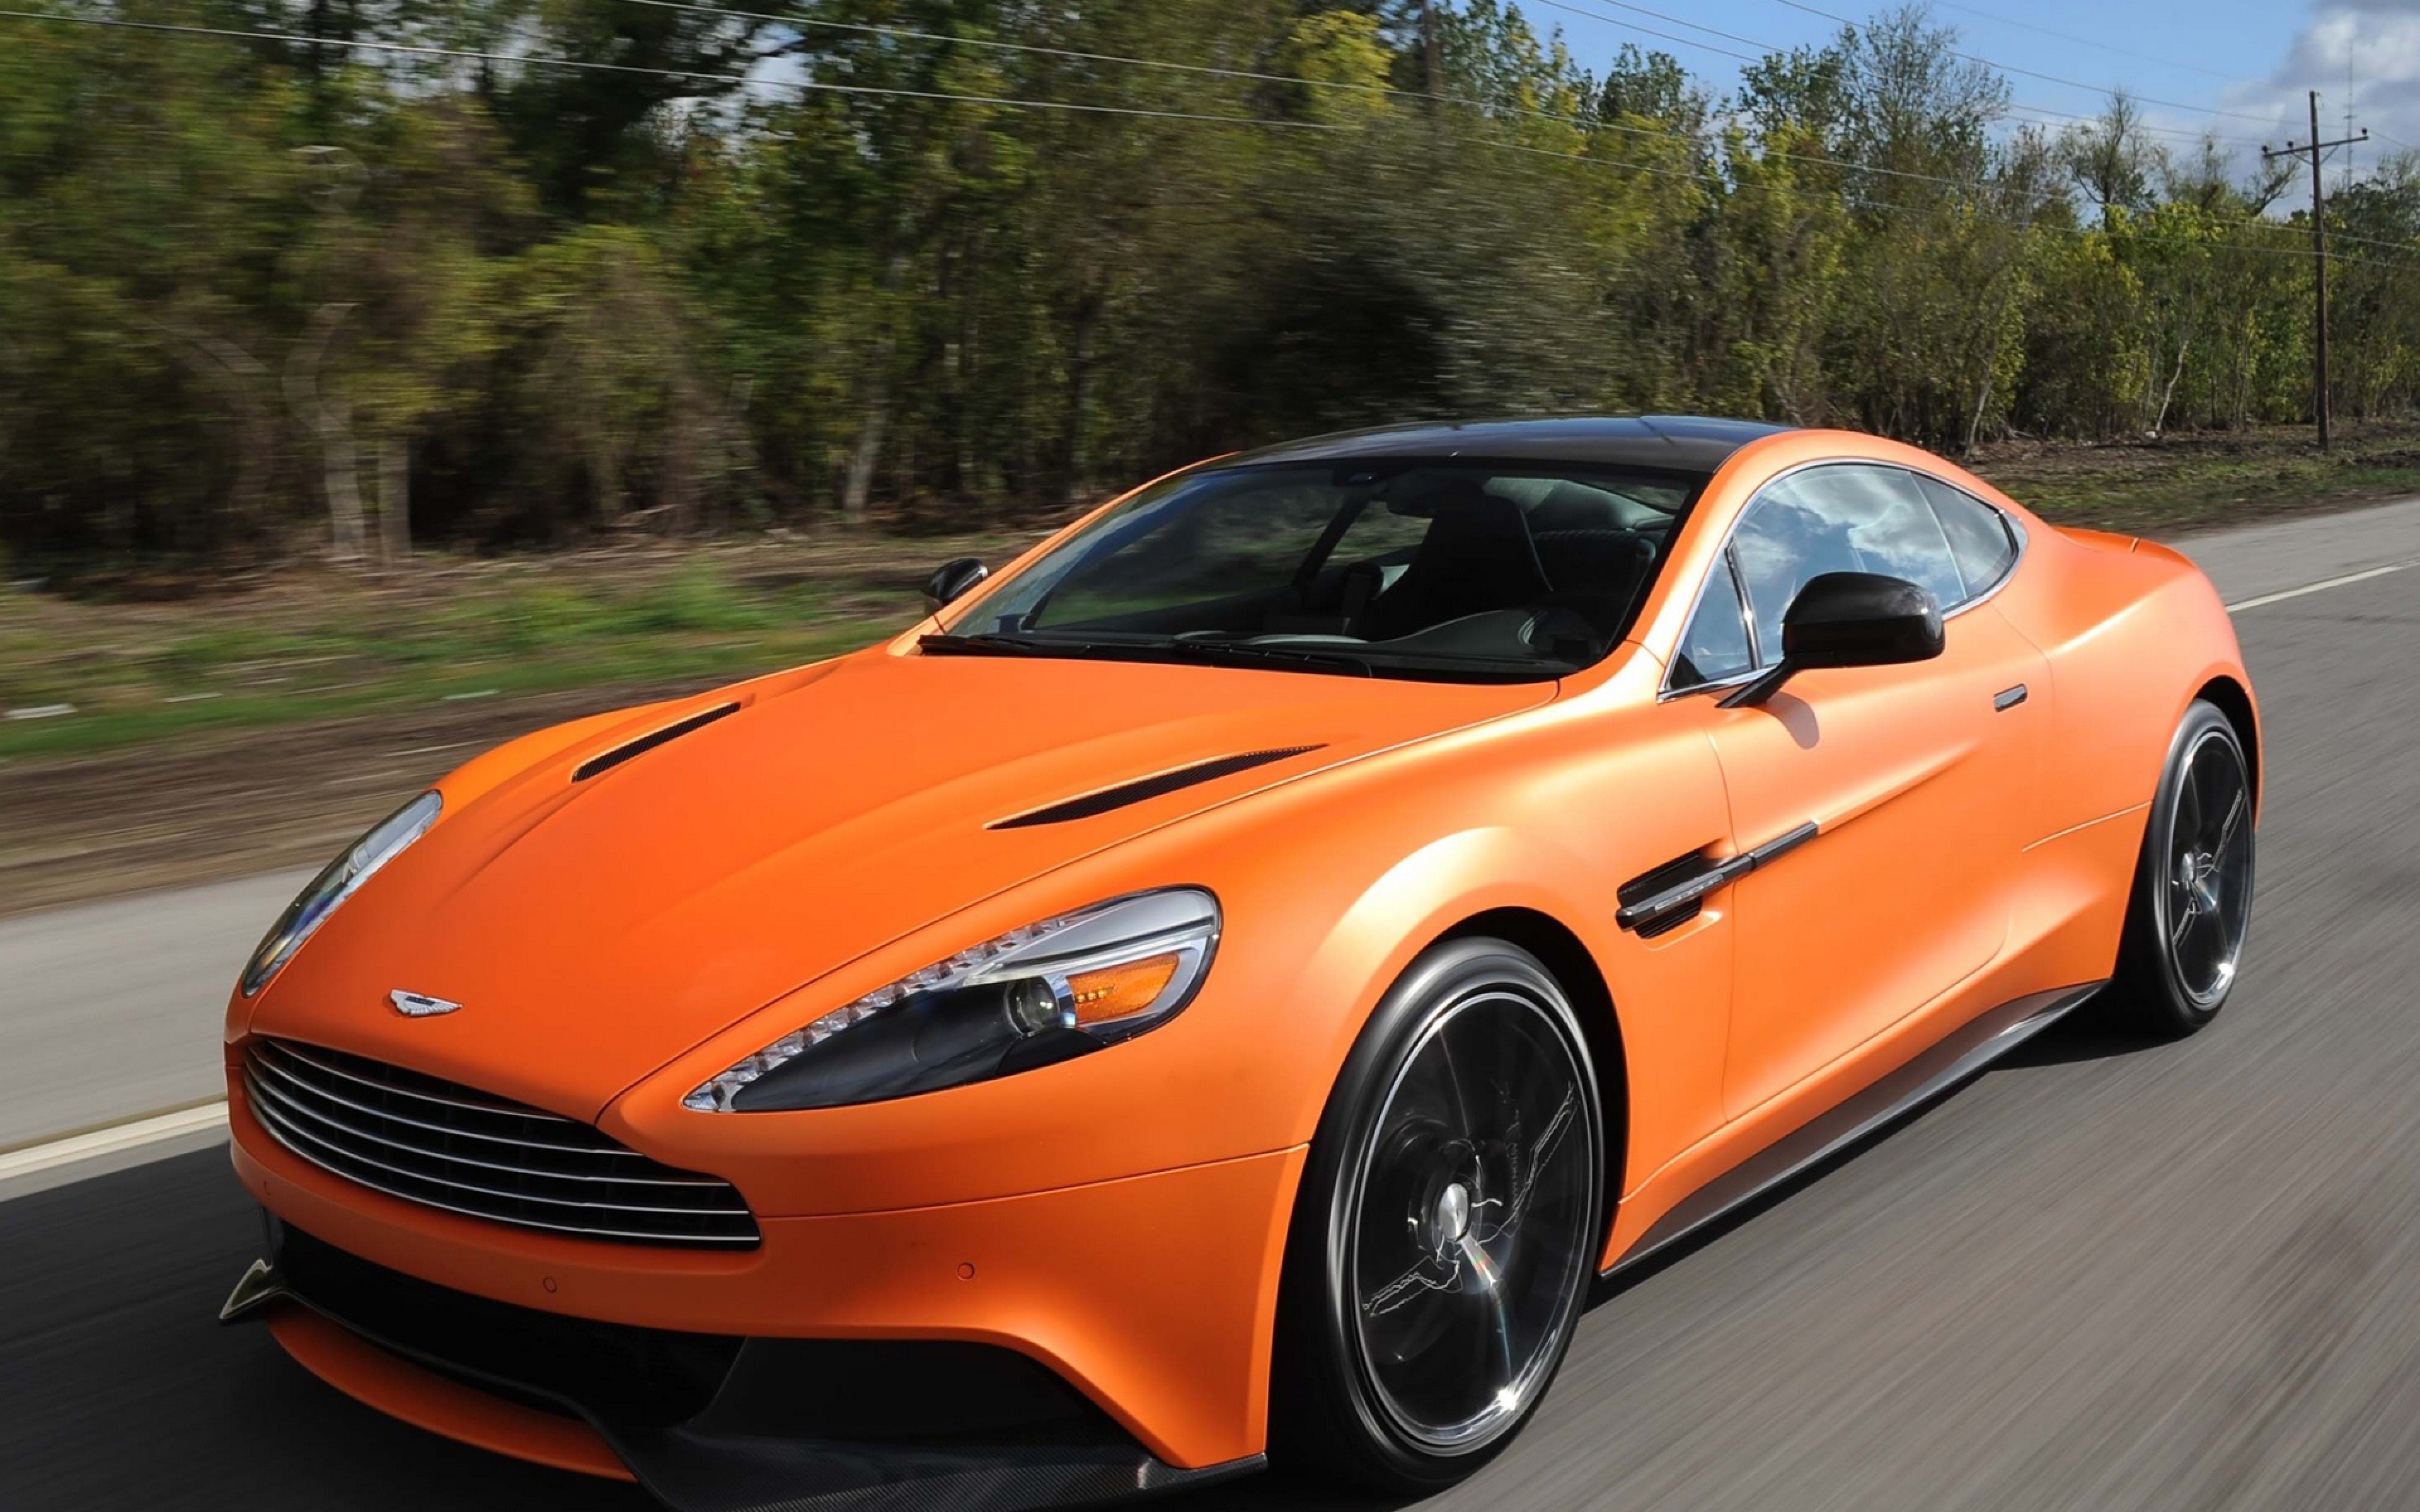 Descarga gratuita de fondo de pantalla para móvil de Aston Martin, Vehículos.